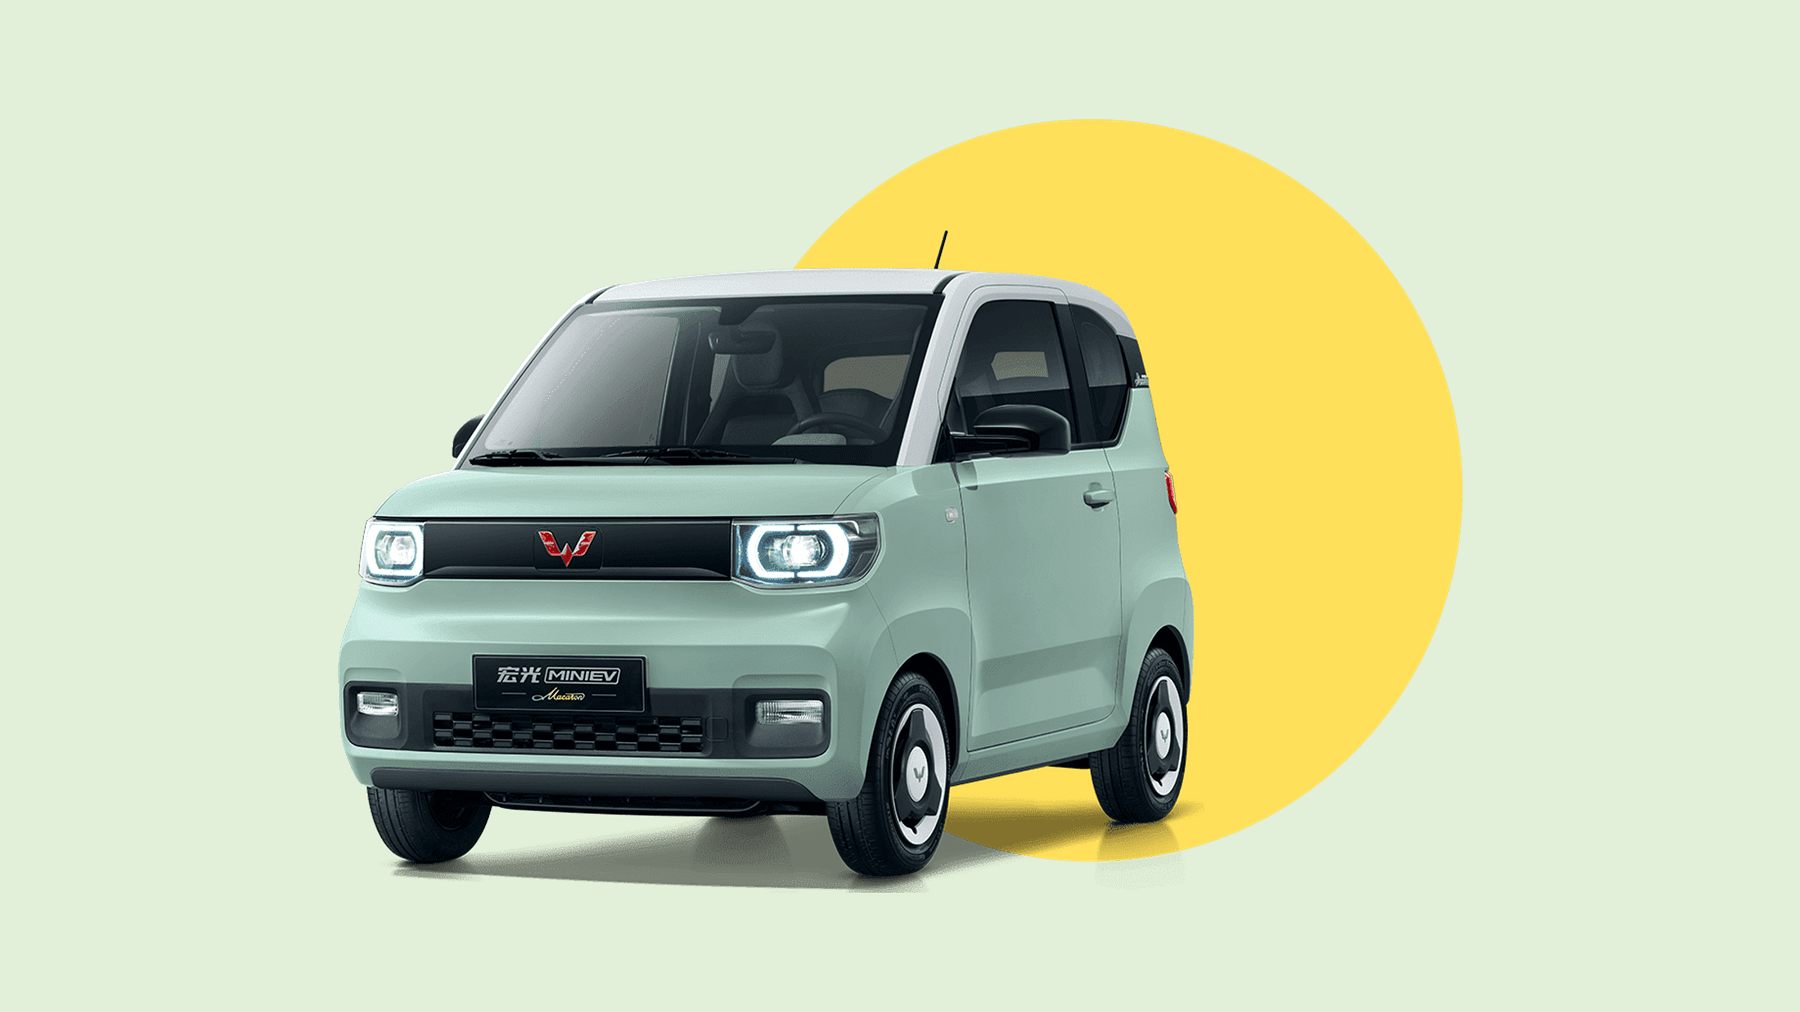 柳州新能源车生产车间,参观了目前市场上最畅销的五菱宏光mini ev电动